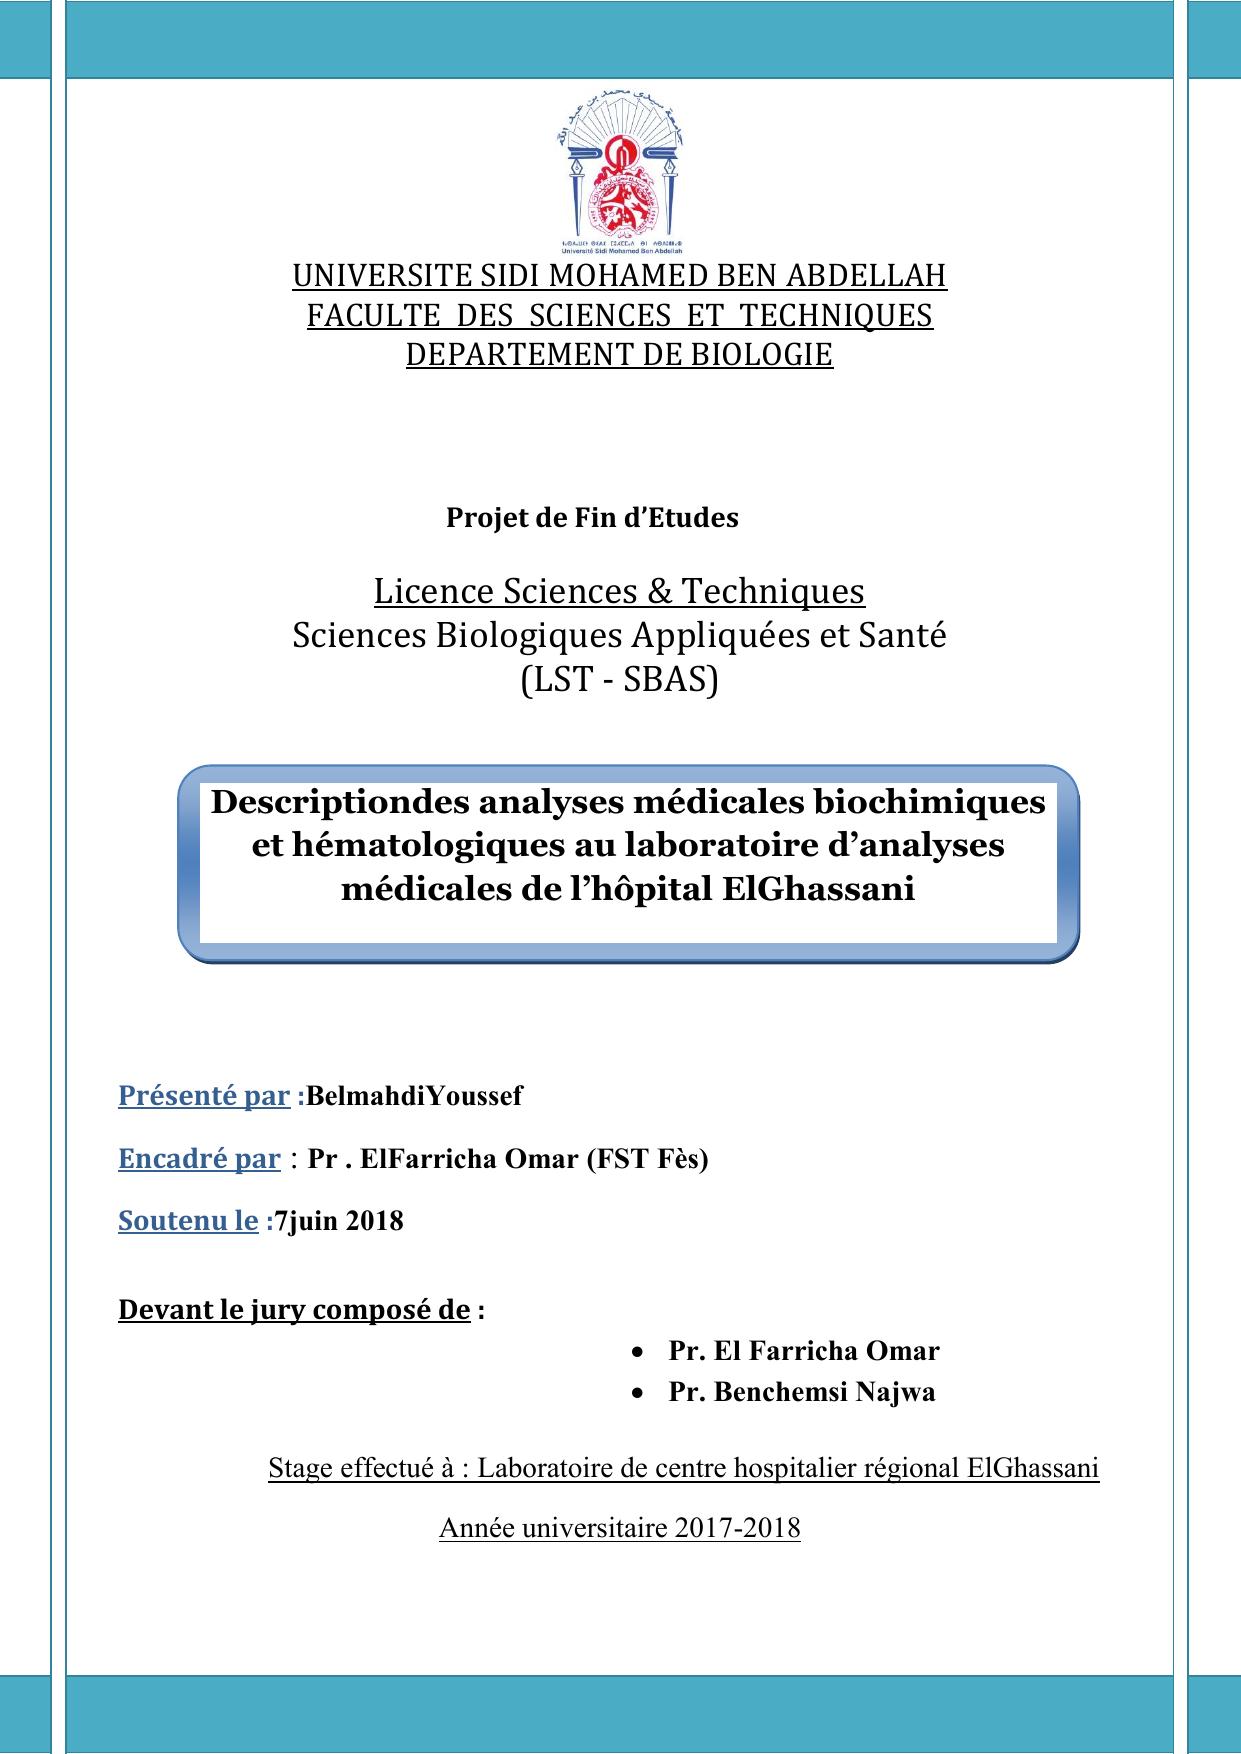 Descriptiondes analyses médicales biochimiques et hématologiques au laboratoire d’analyses médicales de l’hôpital ElGhassani